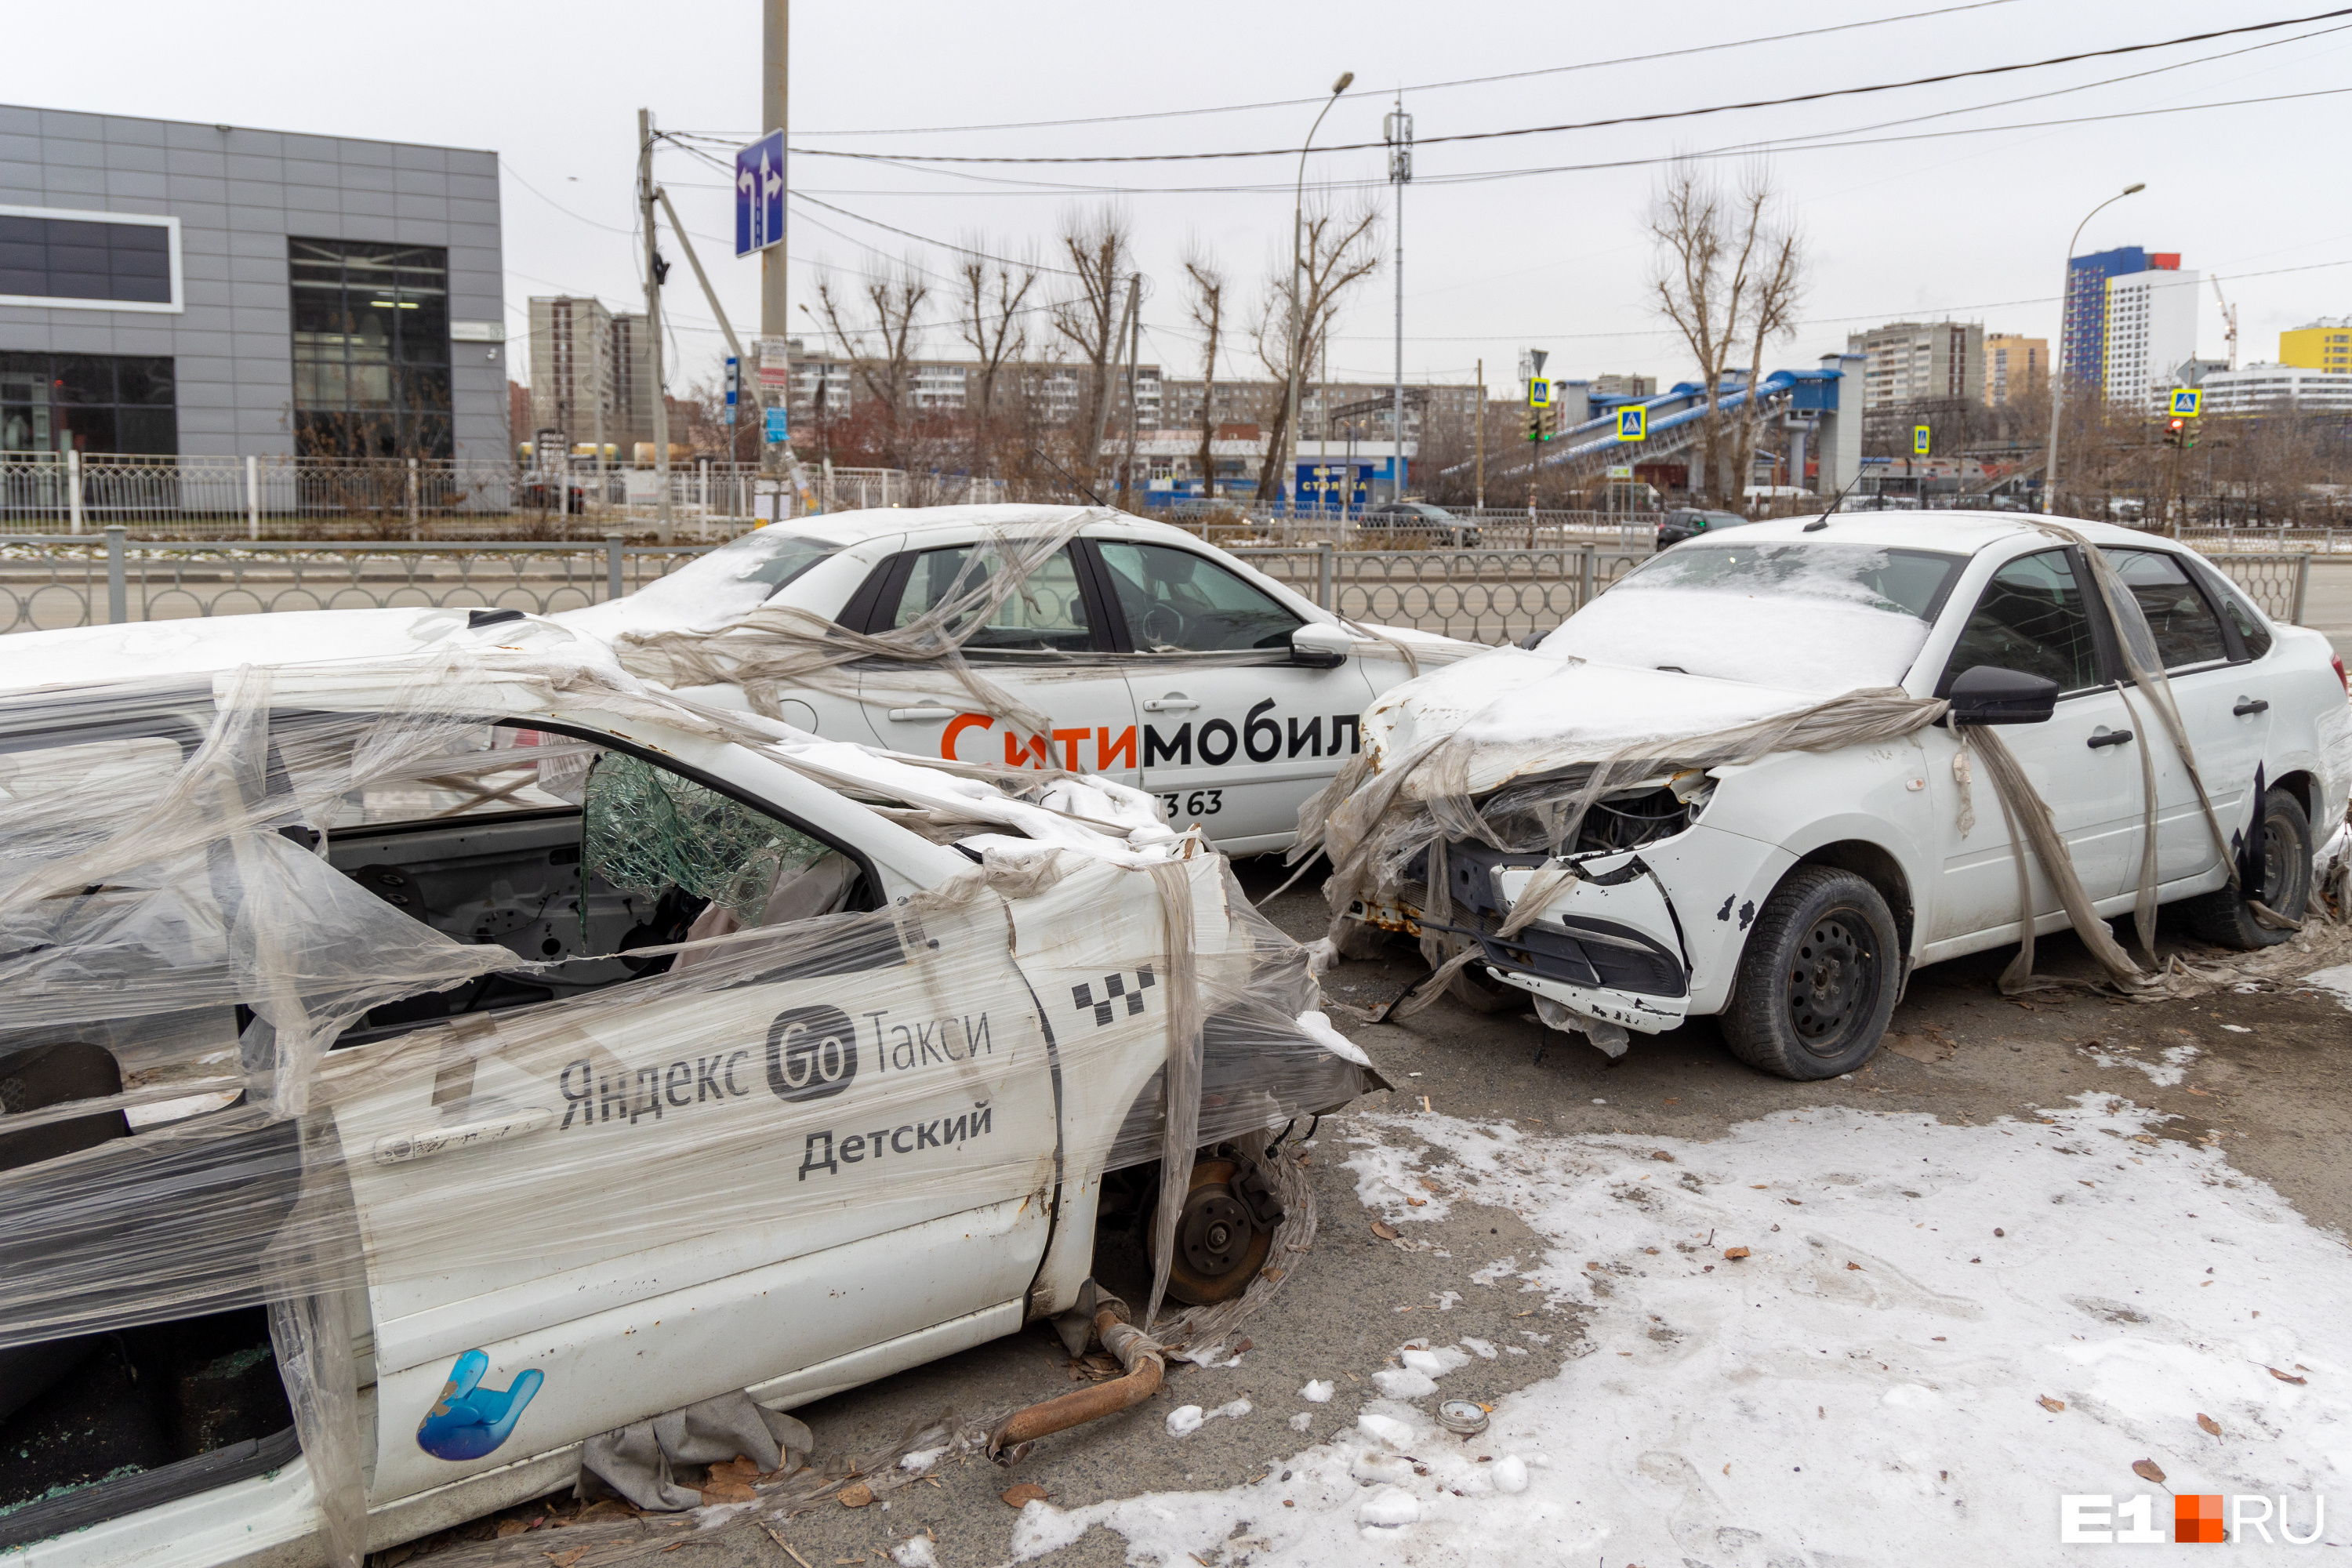 Кладбище убитых такси: в Екатеринбурге у оживленного перекрестка устроили свалку легковушек